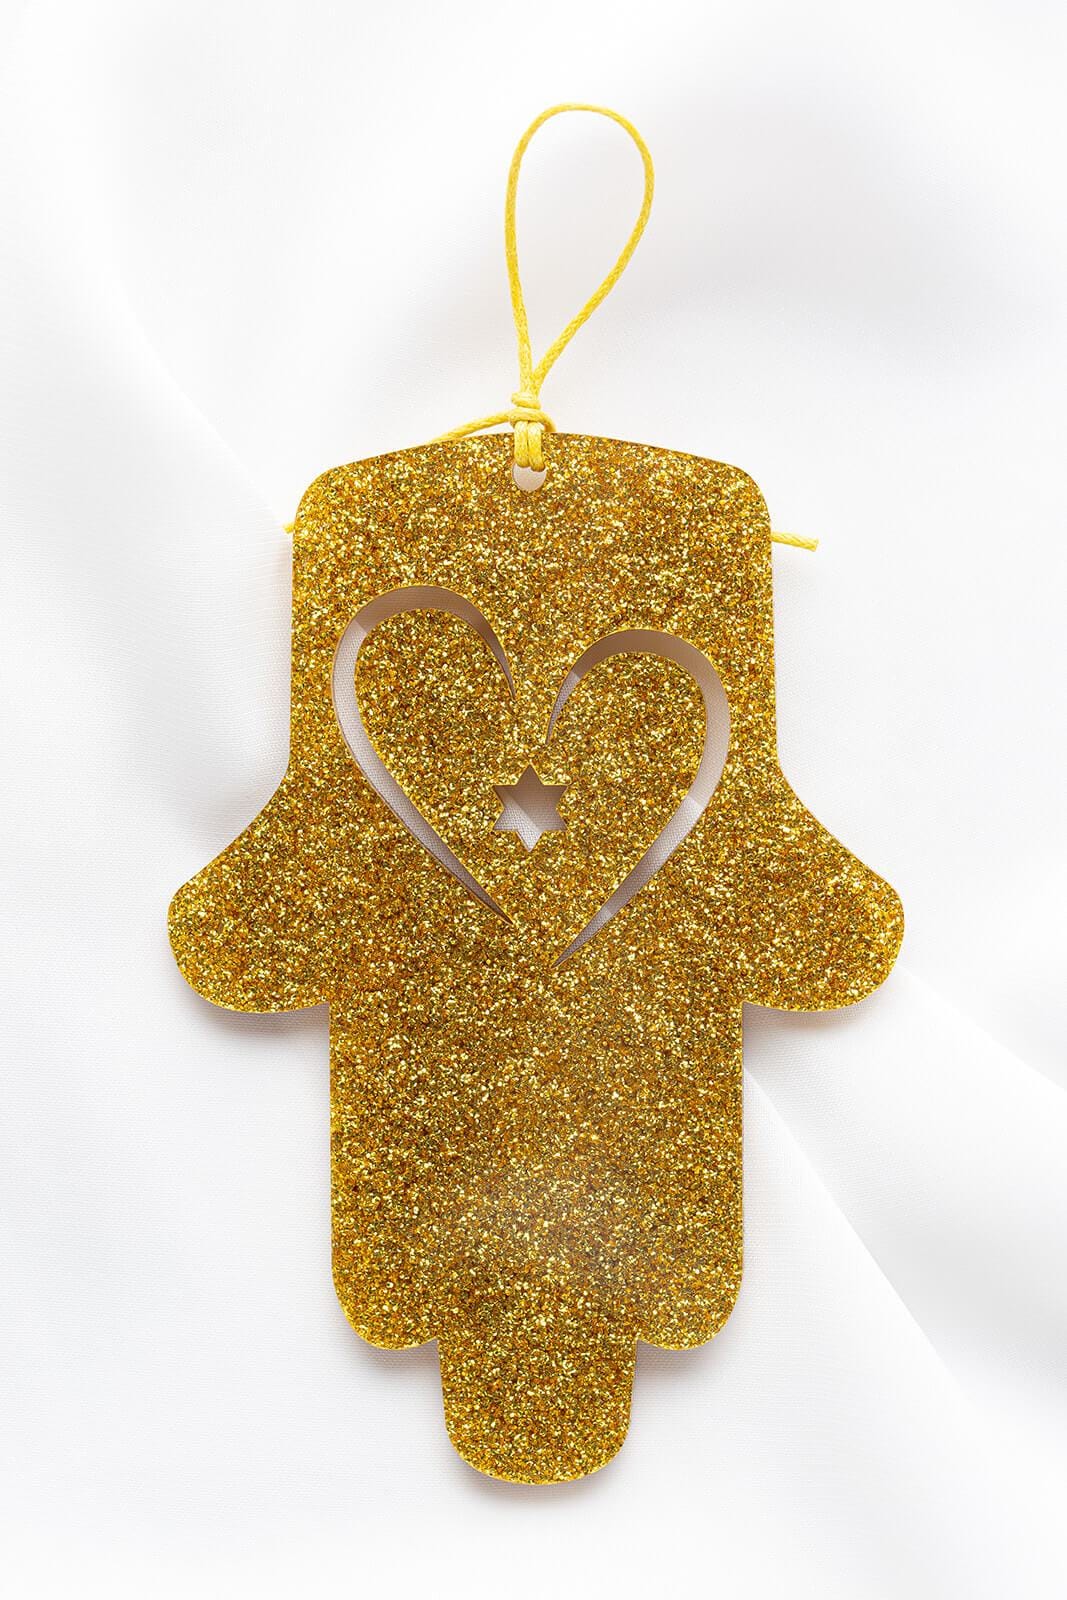 Ariel Tidhar Wall Hamsas Gold Petite Wall Hamsa with Heart - Gold Glitter